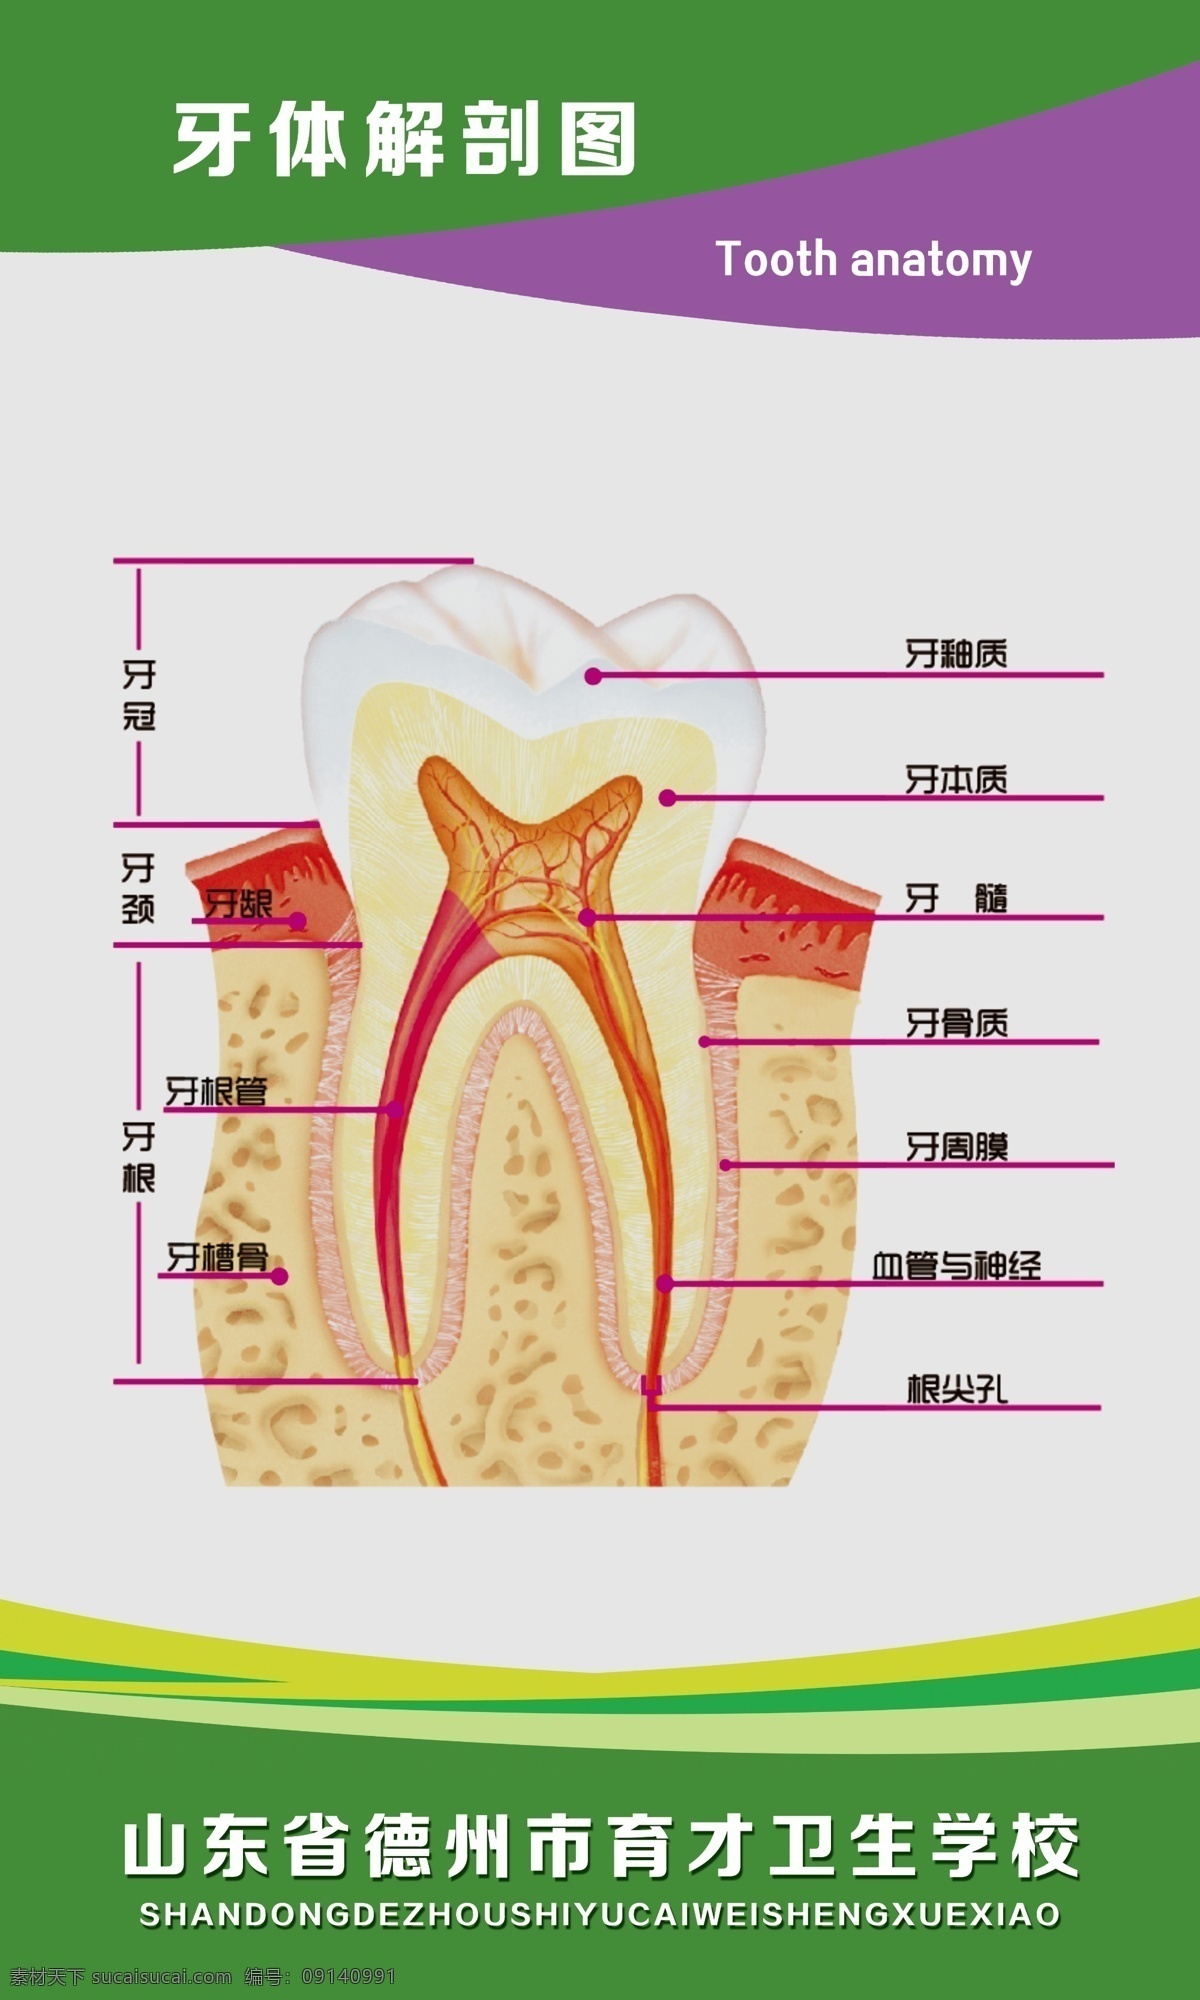 牙体解剖图 医院展板 人体结构 医学 科室展板 医院挂图 健康 治疗 疾病预防 牙科 牙齿